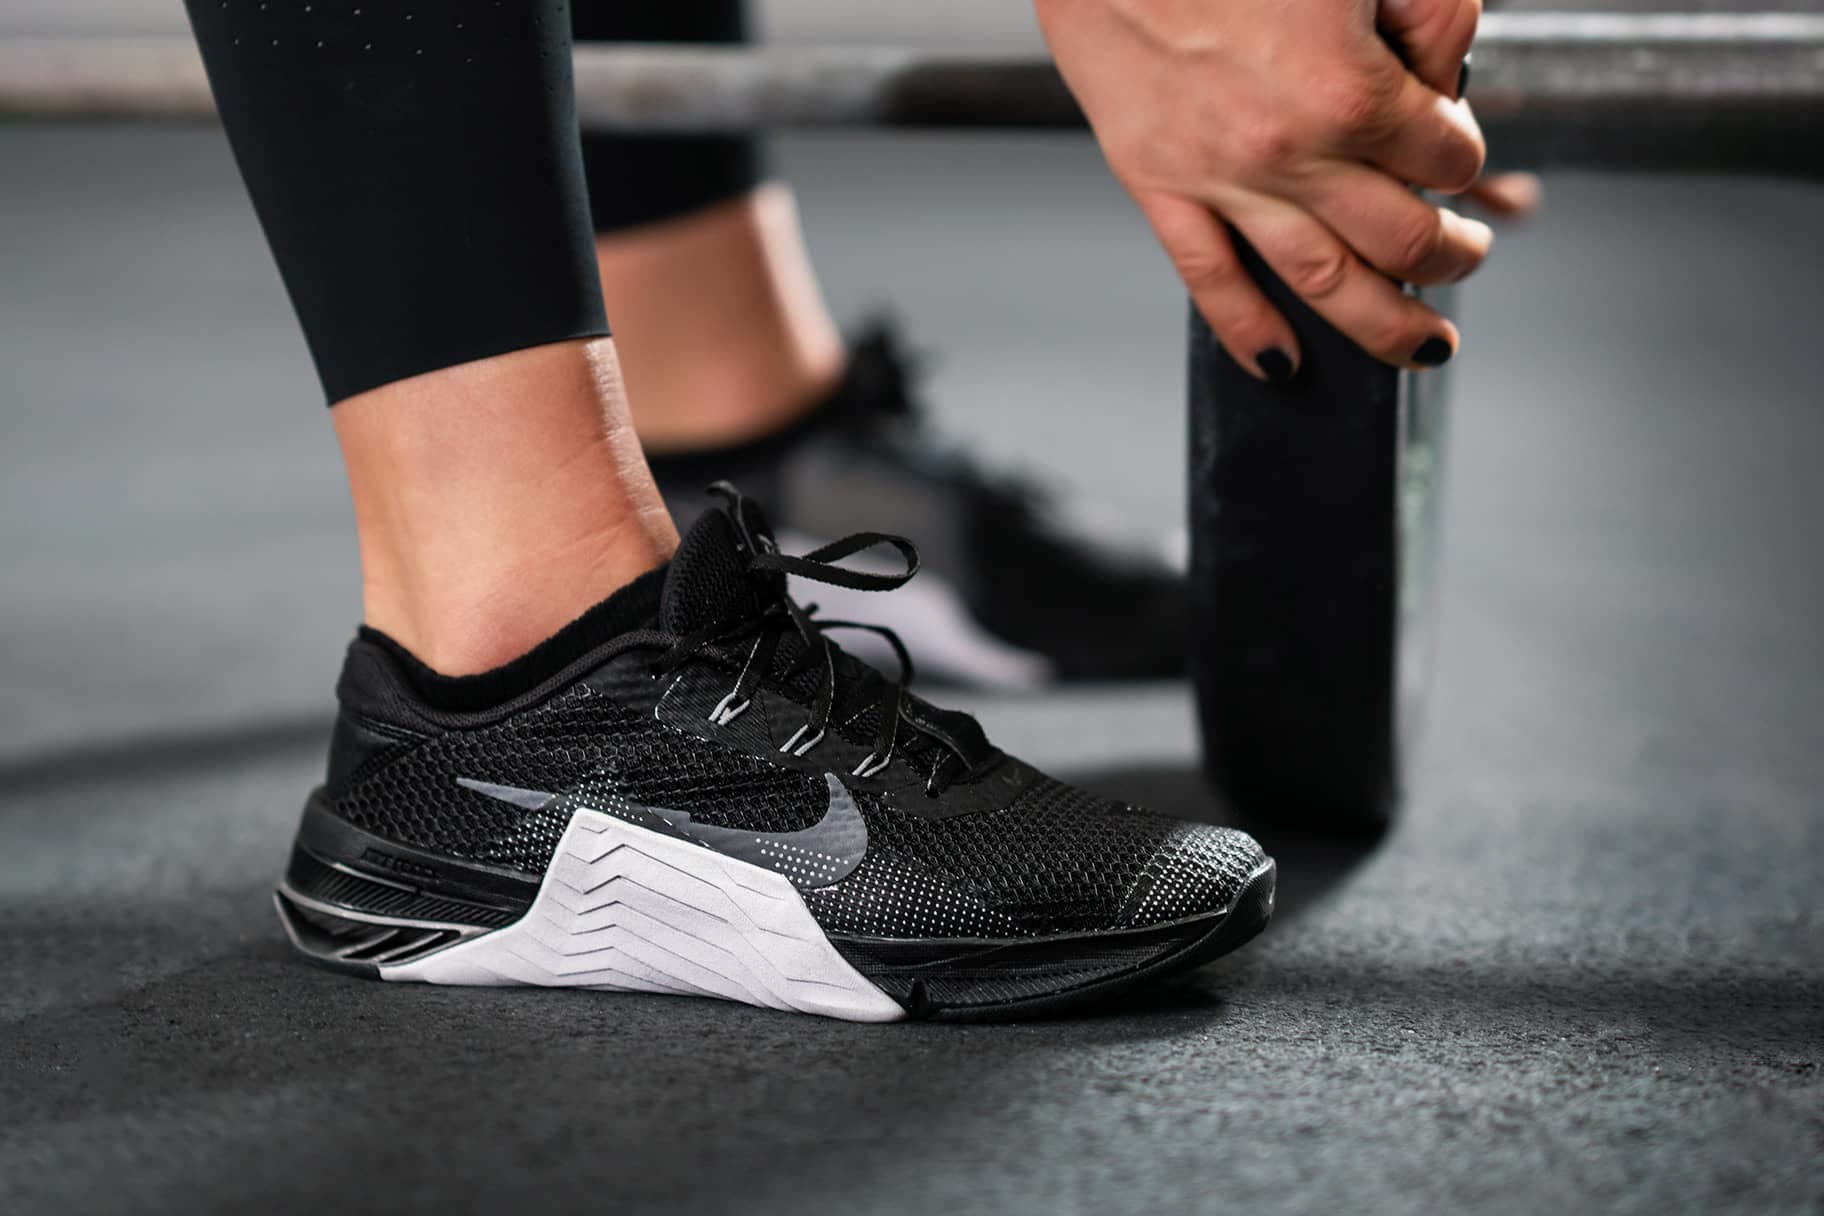 spion Frustratie Bij wet Welche Nike Schuhe eignen sich am besten für CrossFit?. Nike CH